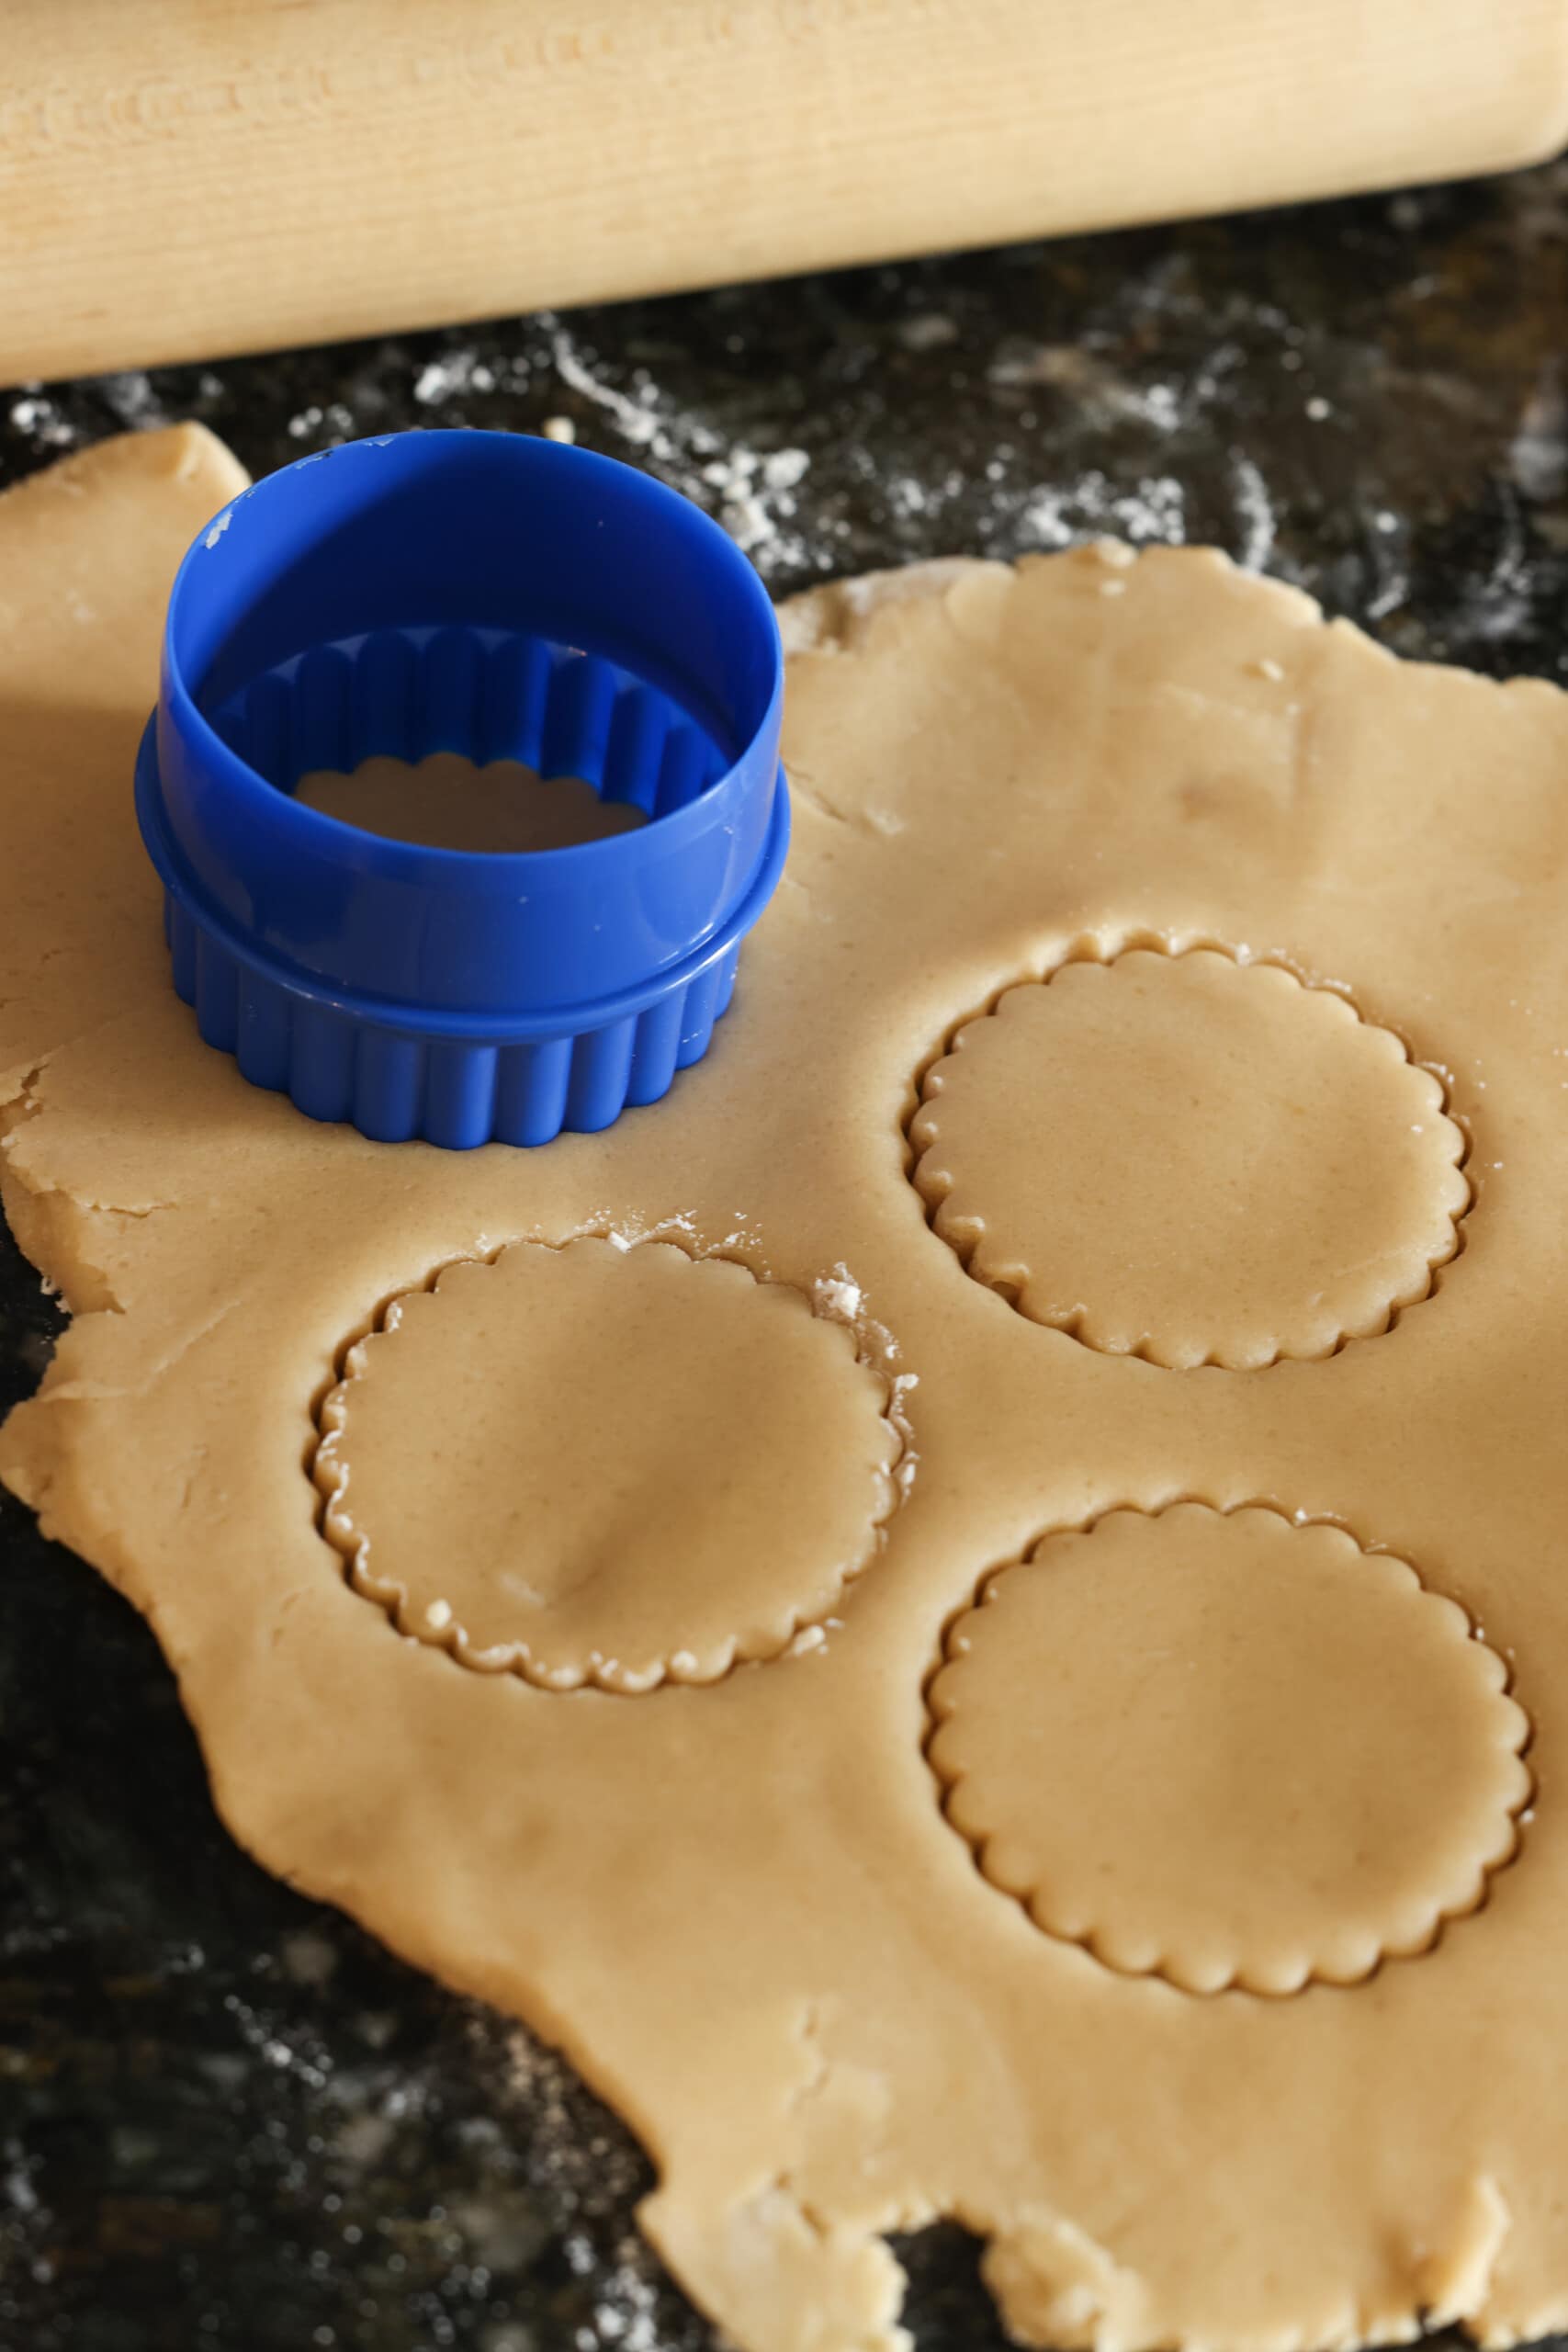 lo zucchero di canna ha tagliato la pasta per biscotti con il tagliabiscotti